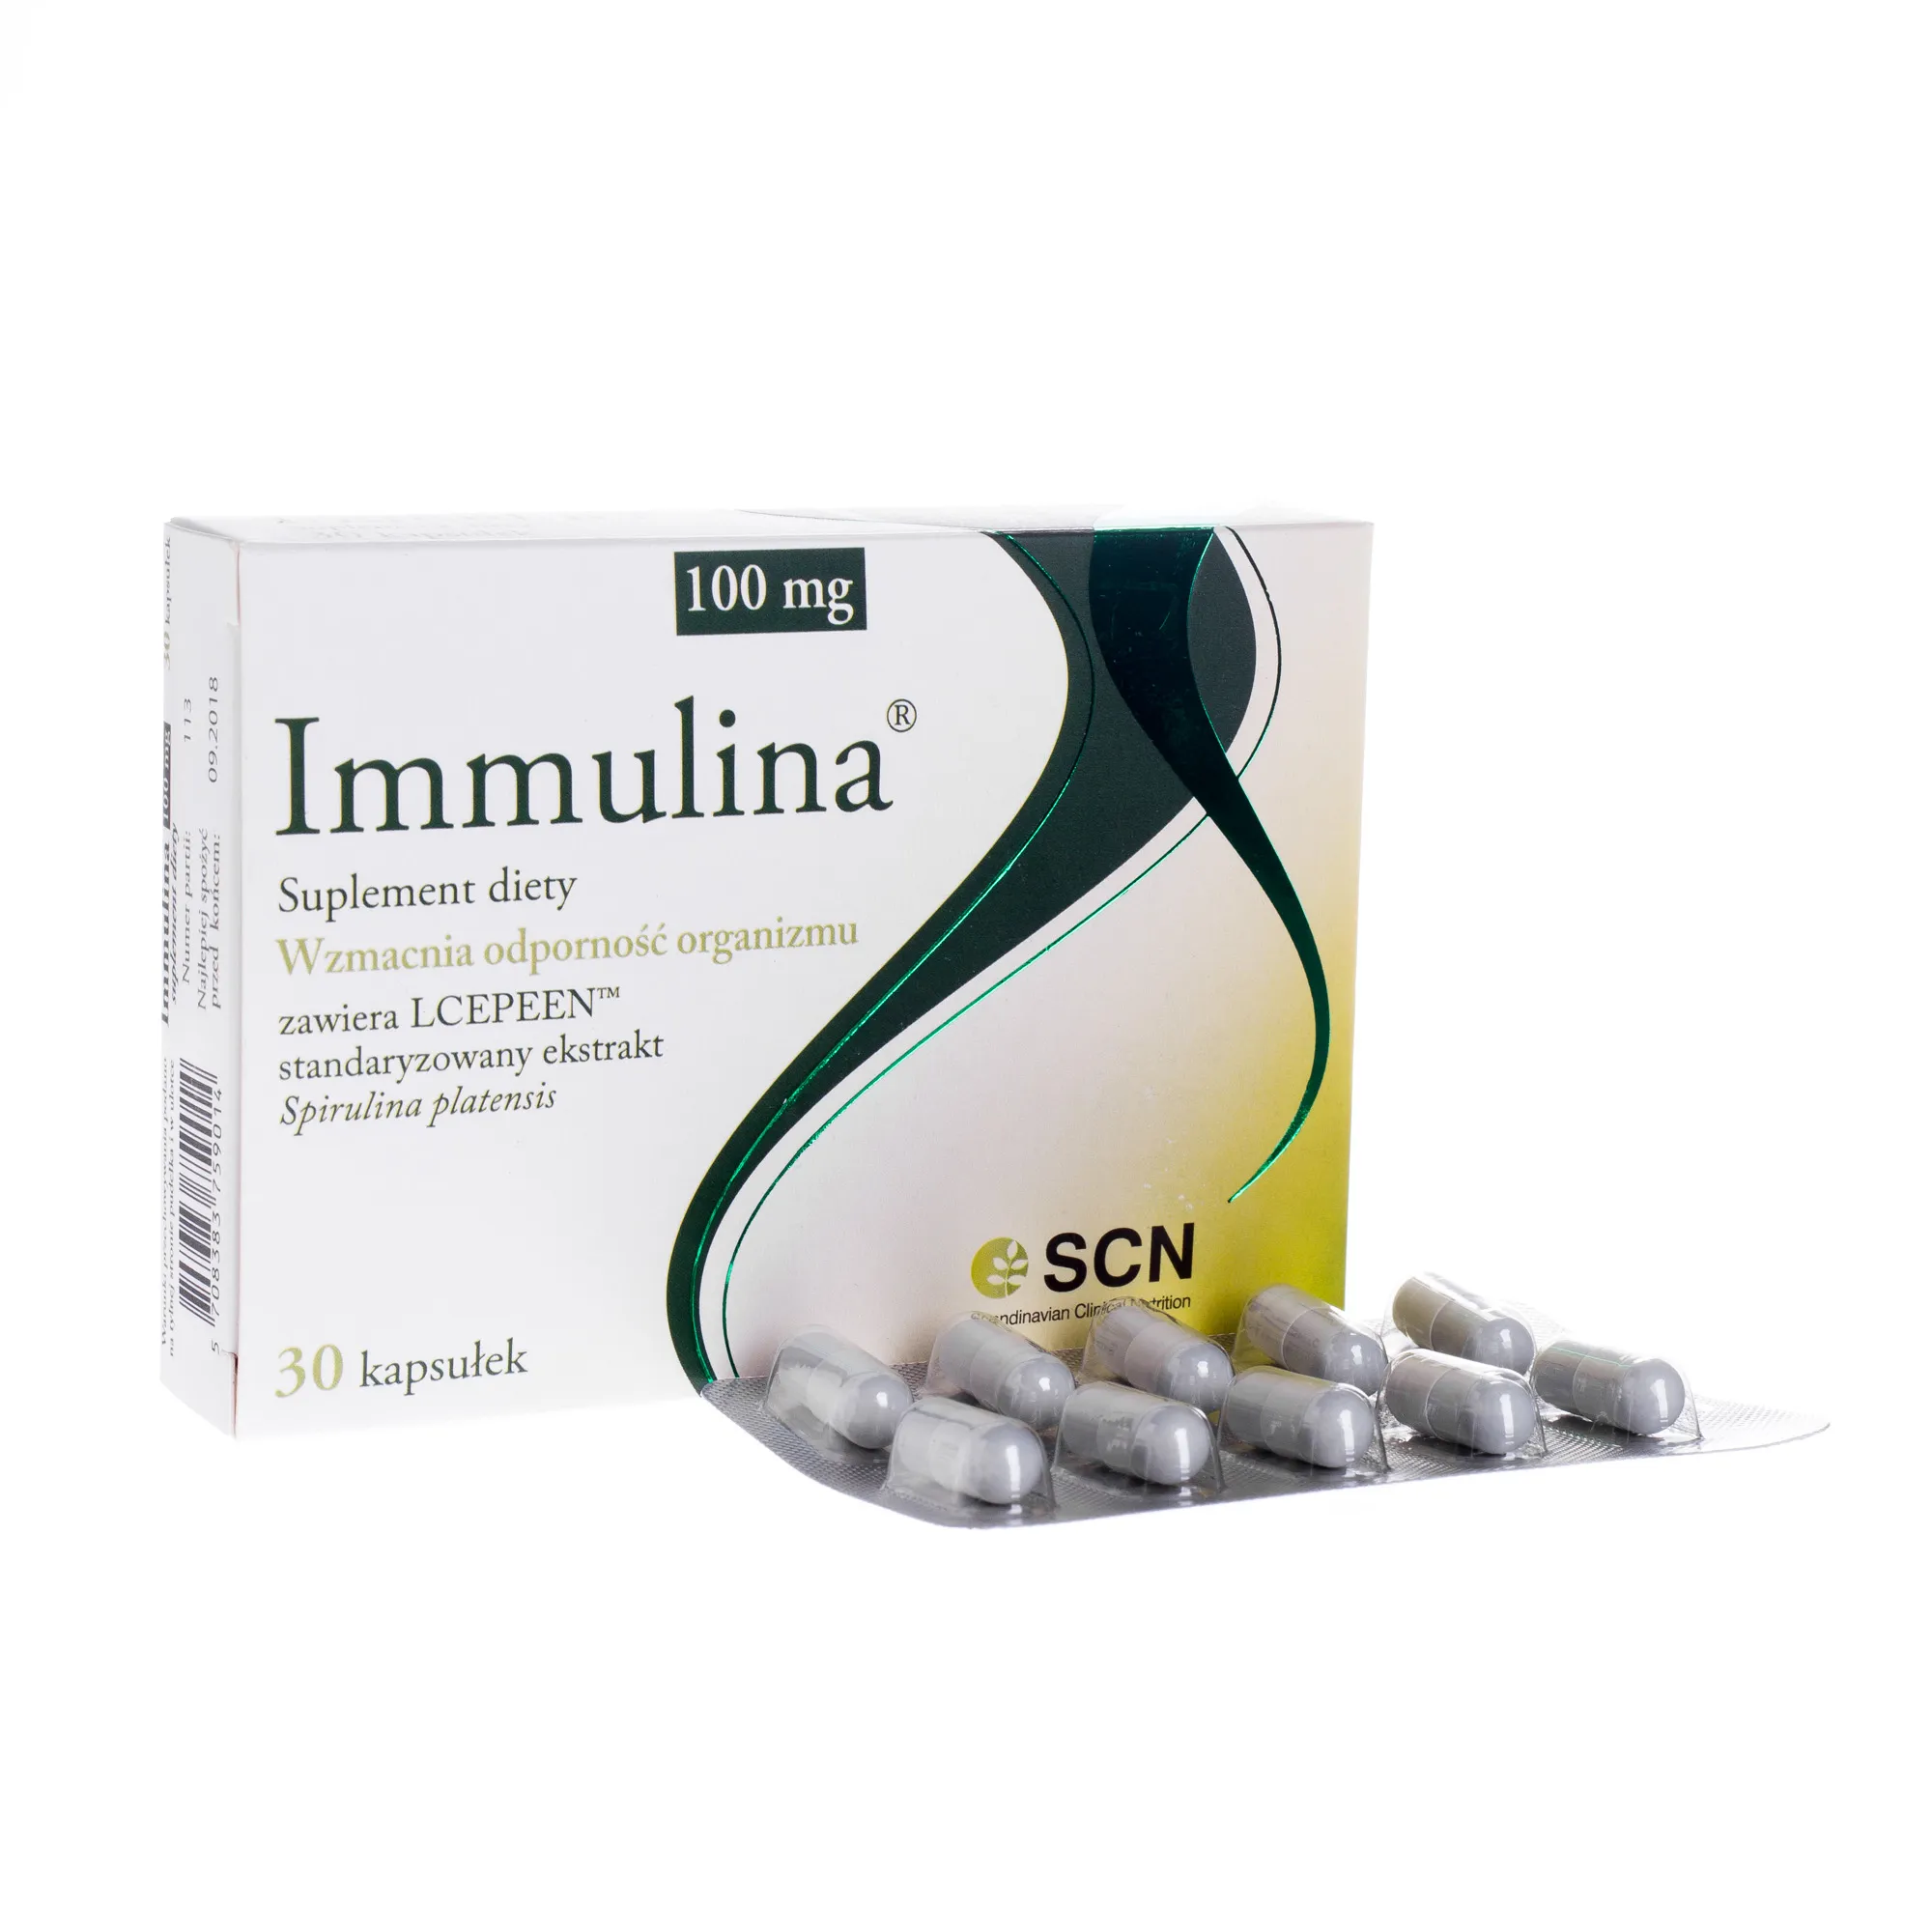 Immulina 100 mg, wzmacnia odporność organizmu, 30 kapsułek